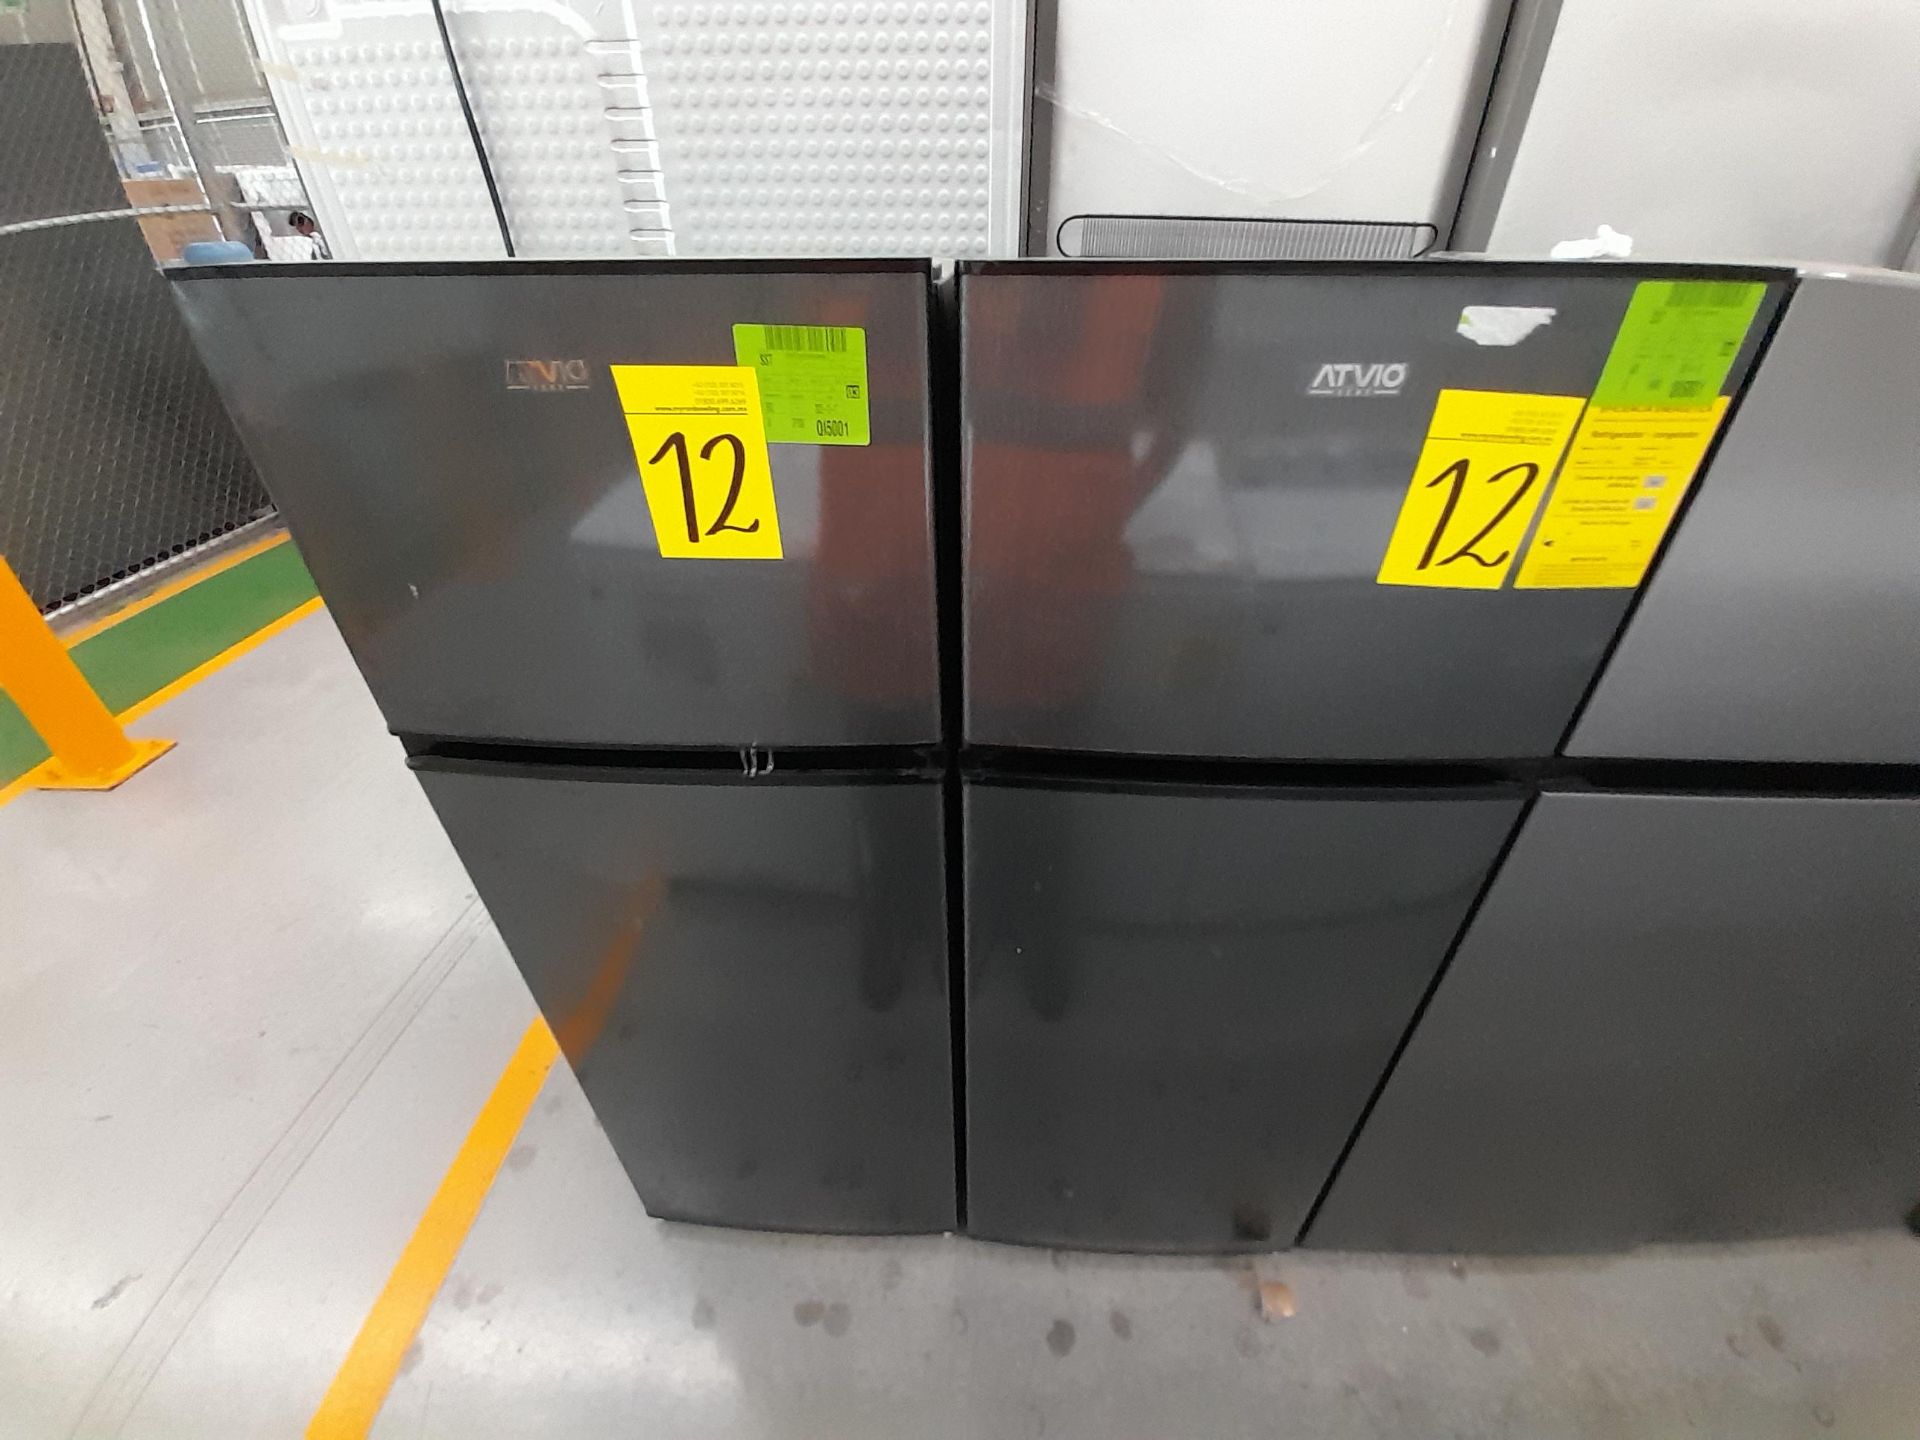 Lote de 2 Refrigeradores contiene: 1 Refrigerador Marca ATVIO, Modelo AT73TMS, Color GRIS; 1 Refrig